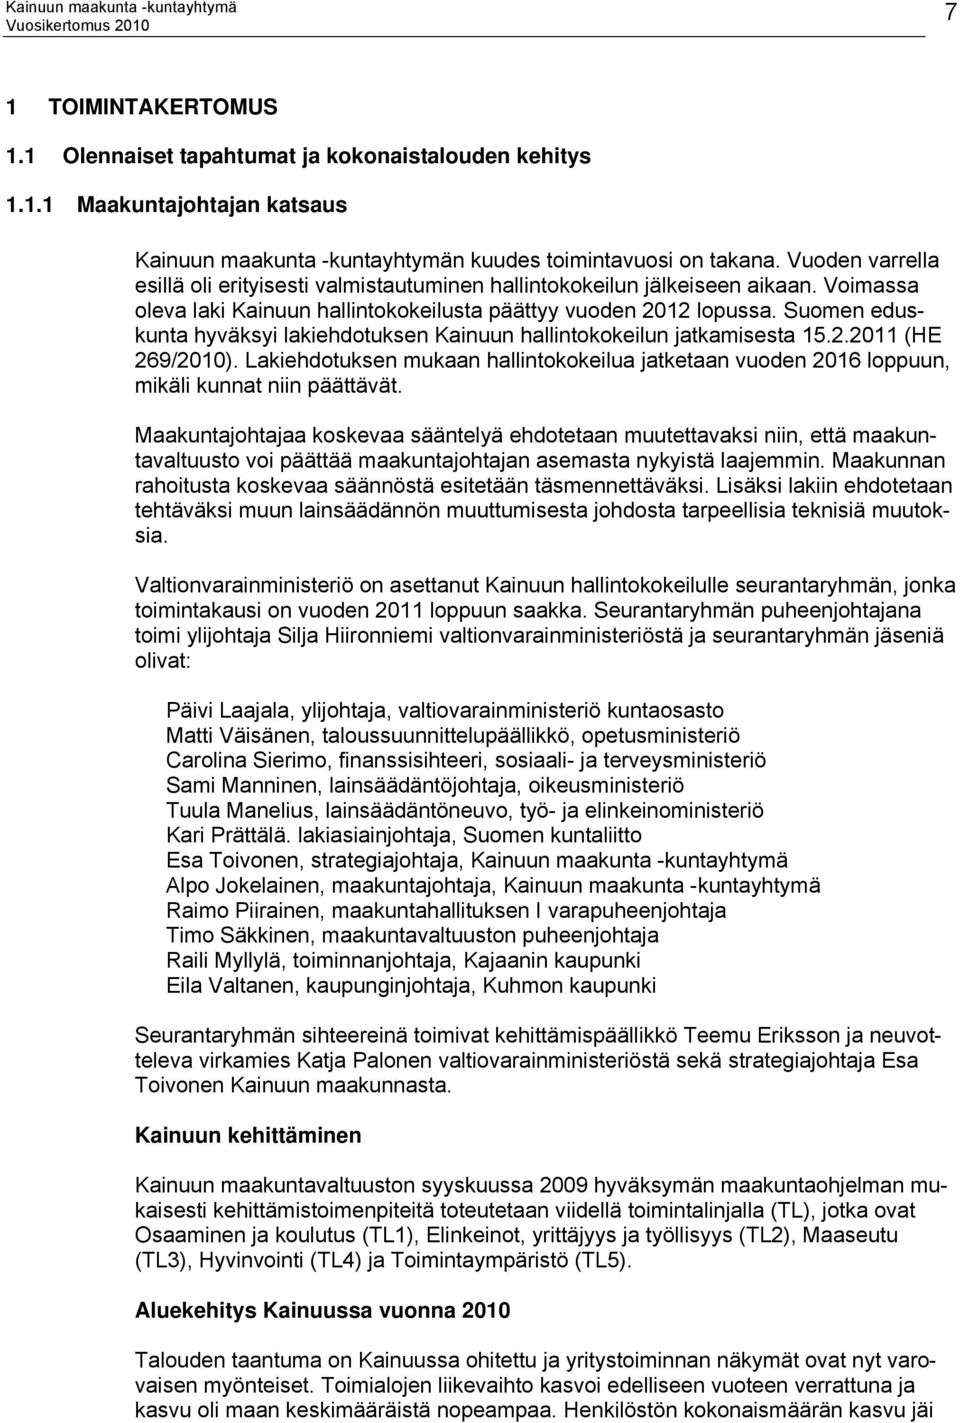 Suomen eduskunta hyväksyi lakiehdotuksen Kainuun hallintokokeilun jatkamisesta 15.2.2011 (HE 269/2010).